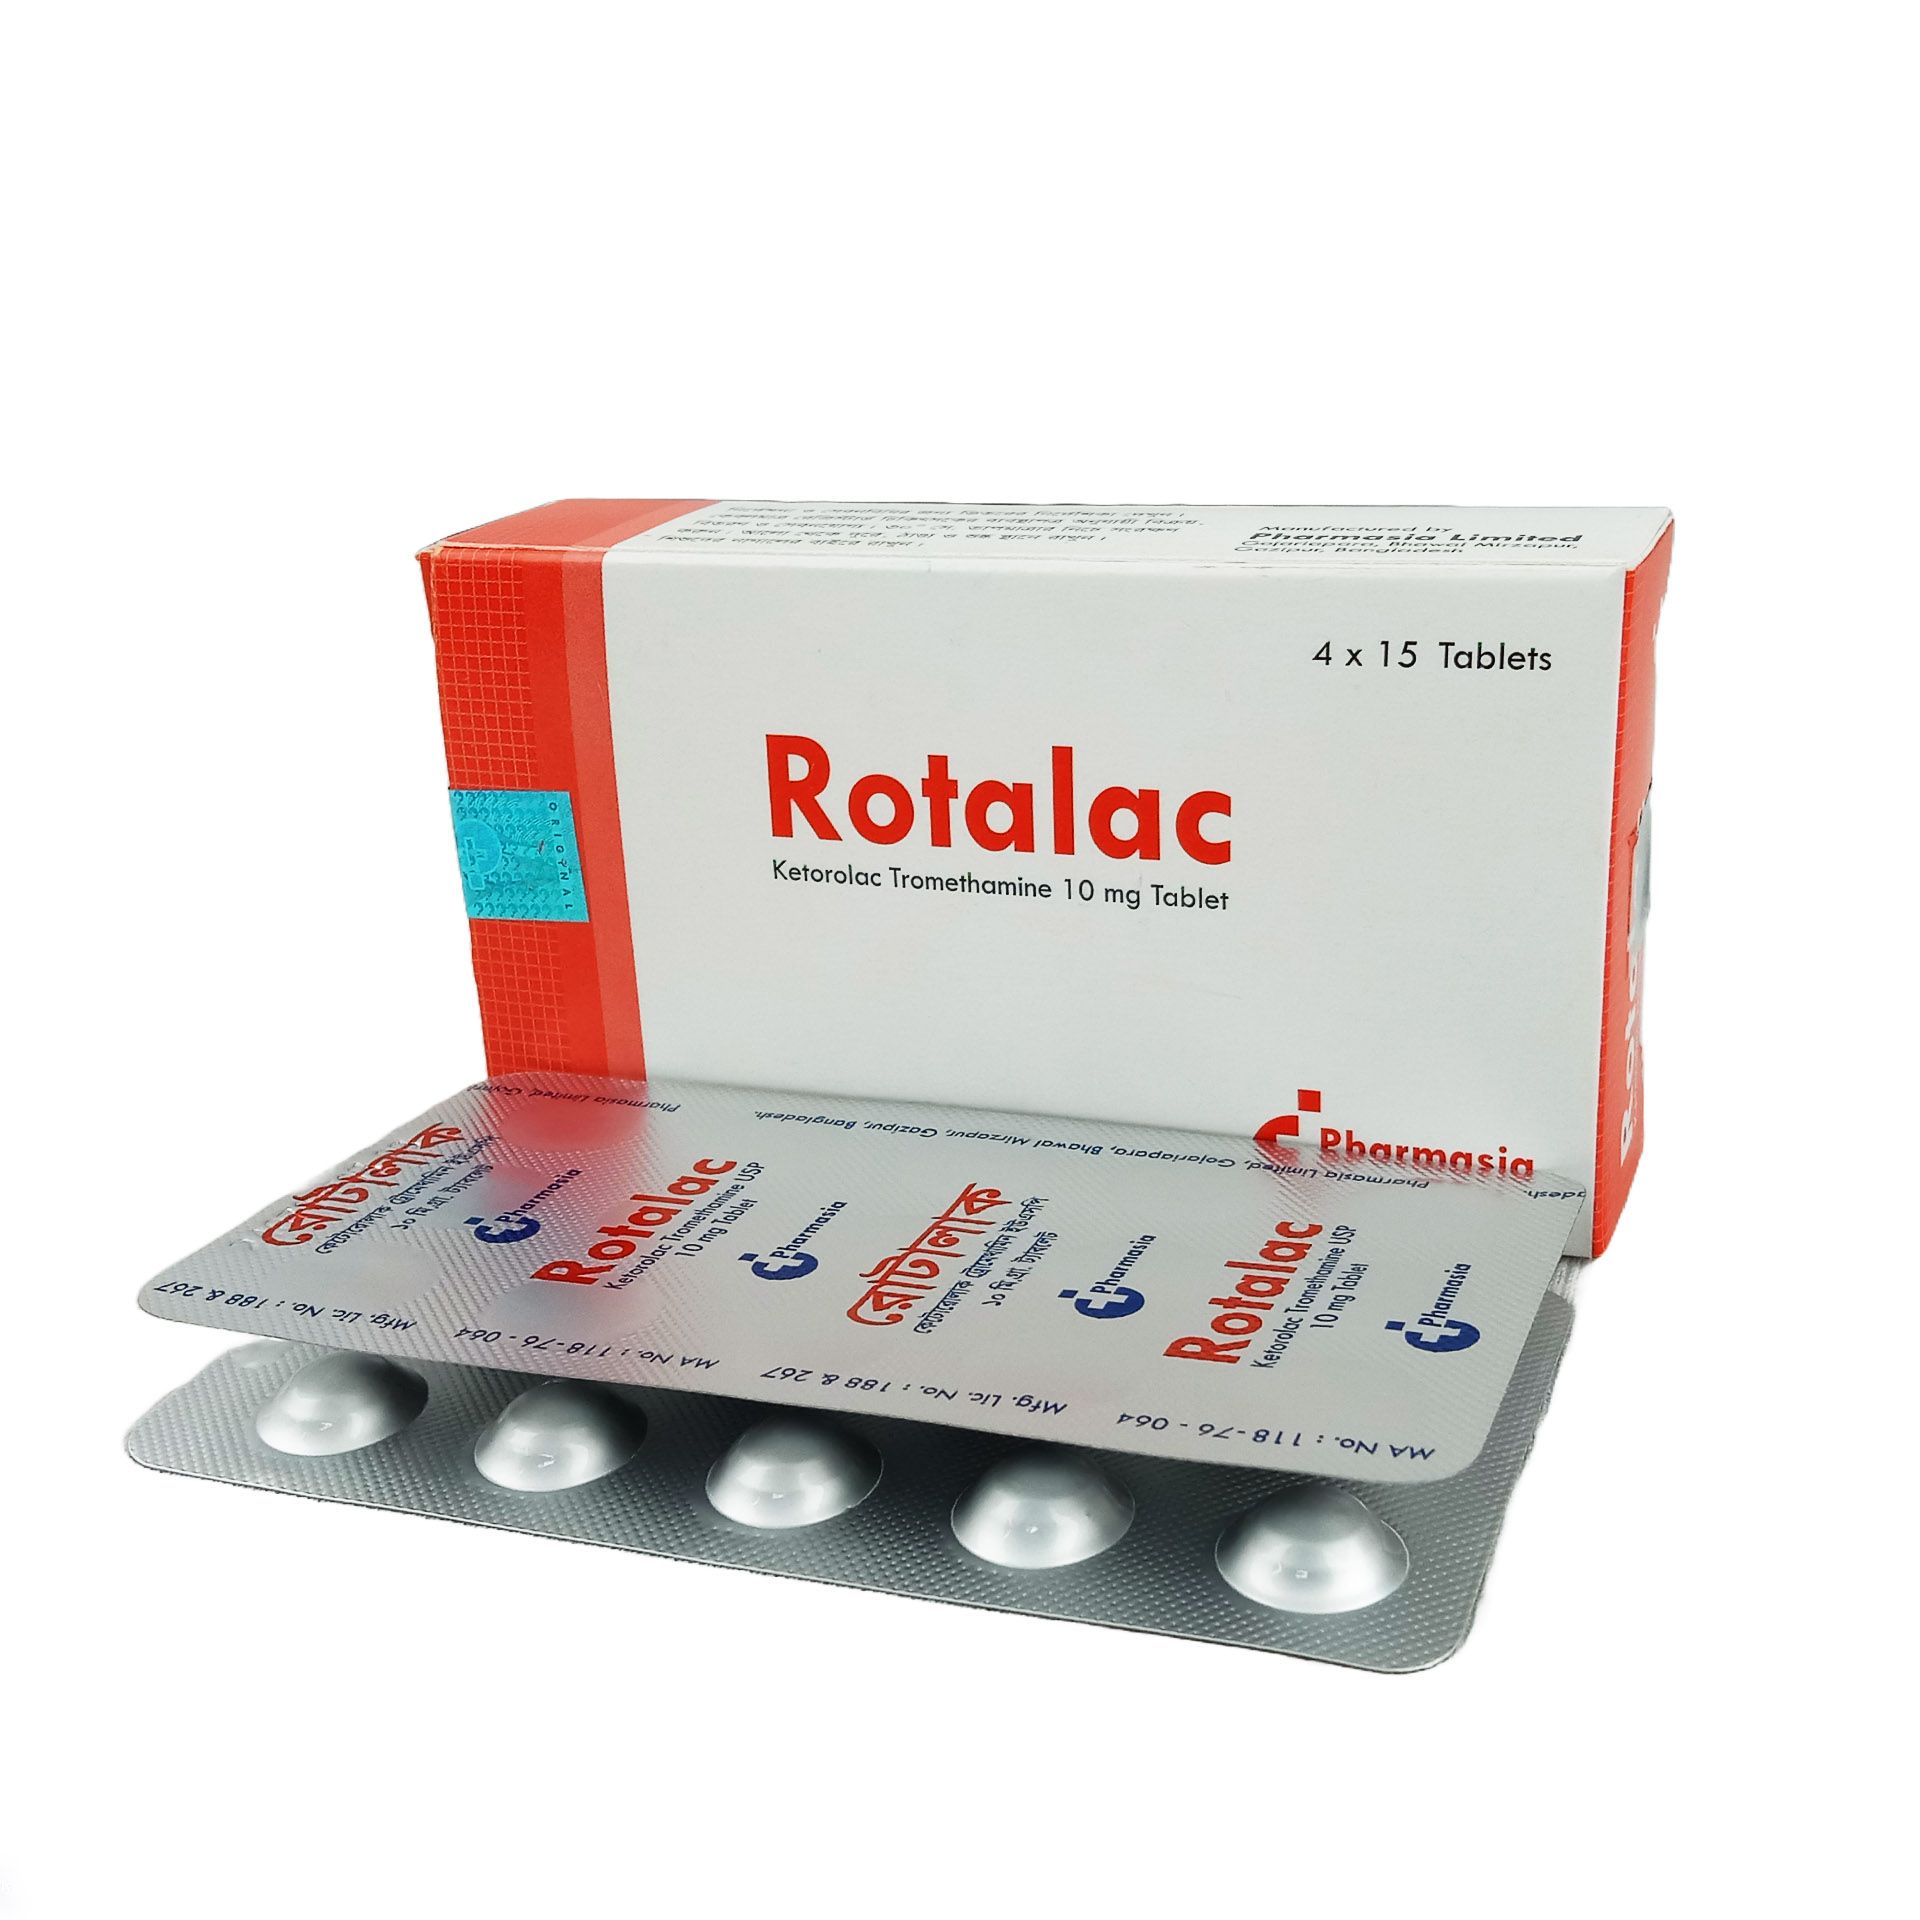 Rotalac 10mg Tablet